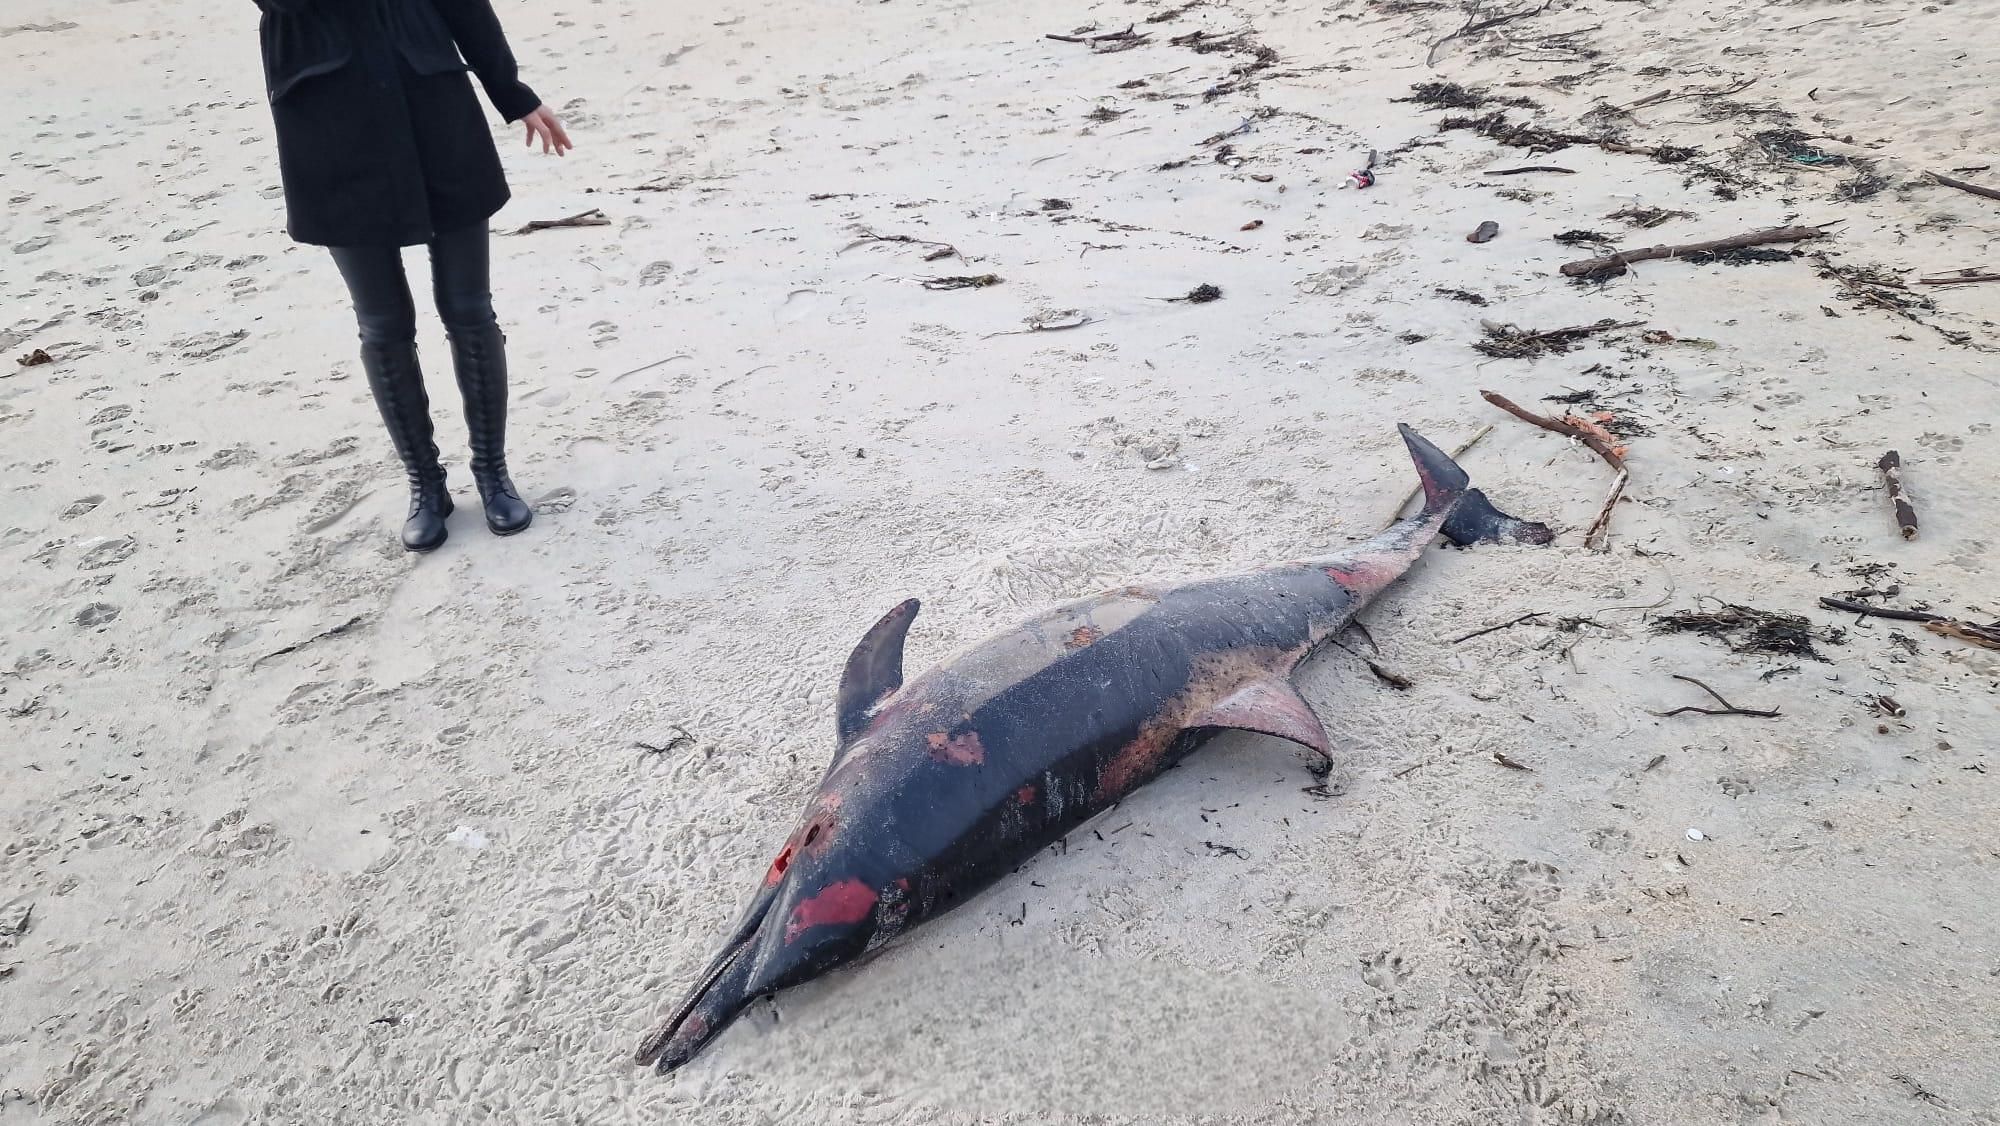 Arribada masiva de delfines muertos en las Rías Baixas